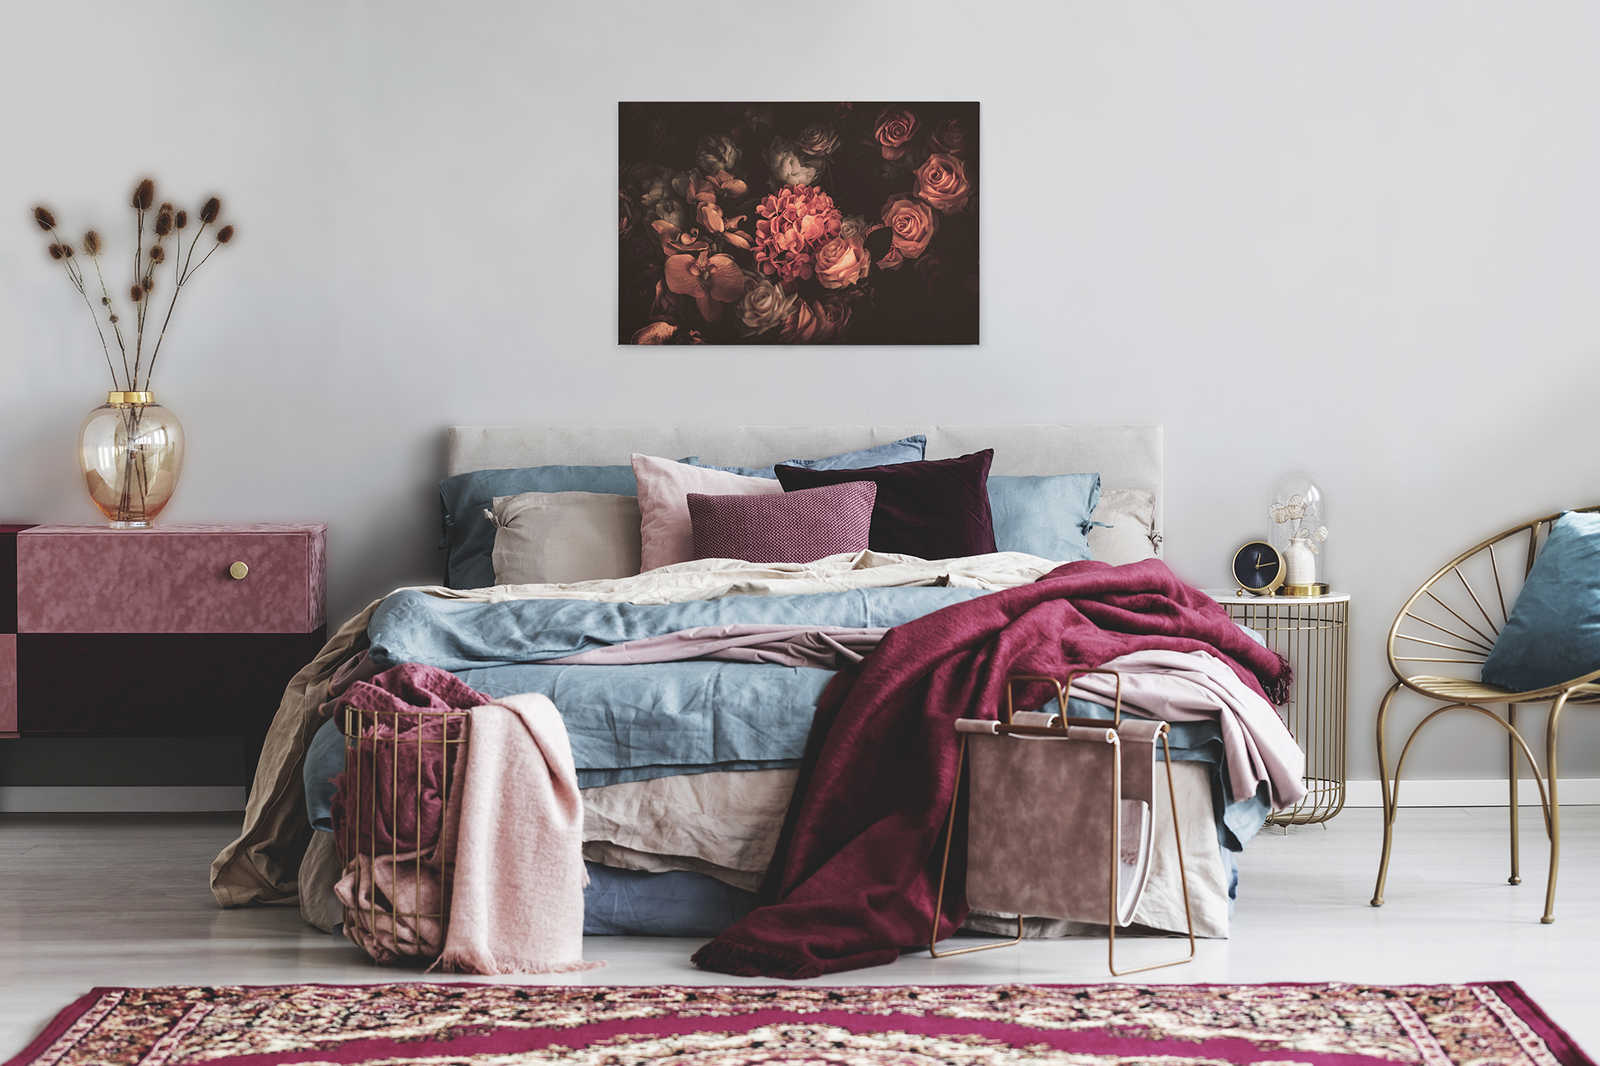             Romantische Leinwand mit Blumenstrauß – 0,90 m x 0,60 m
        